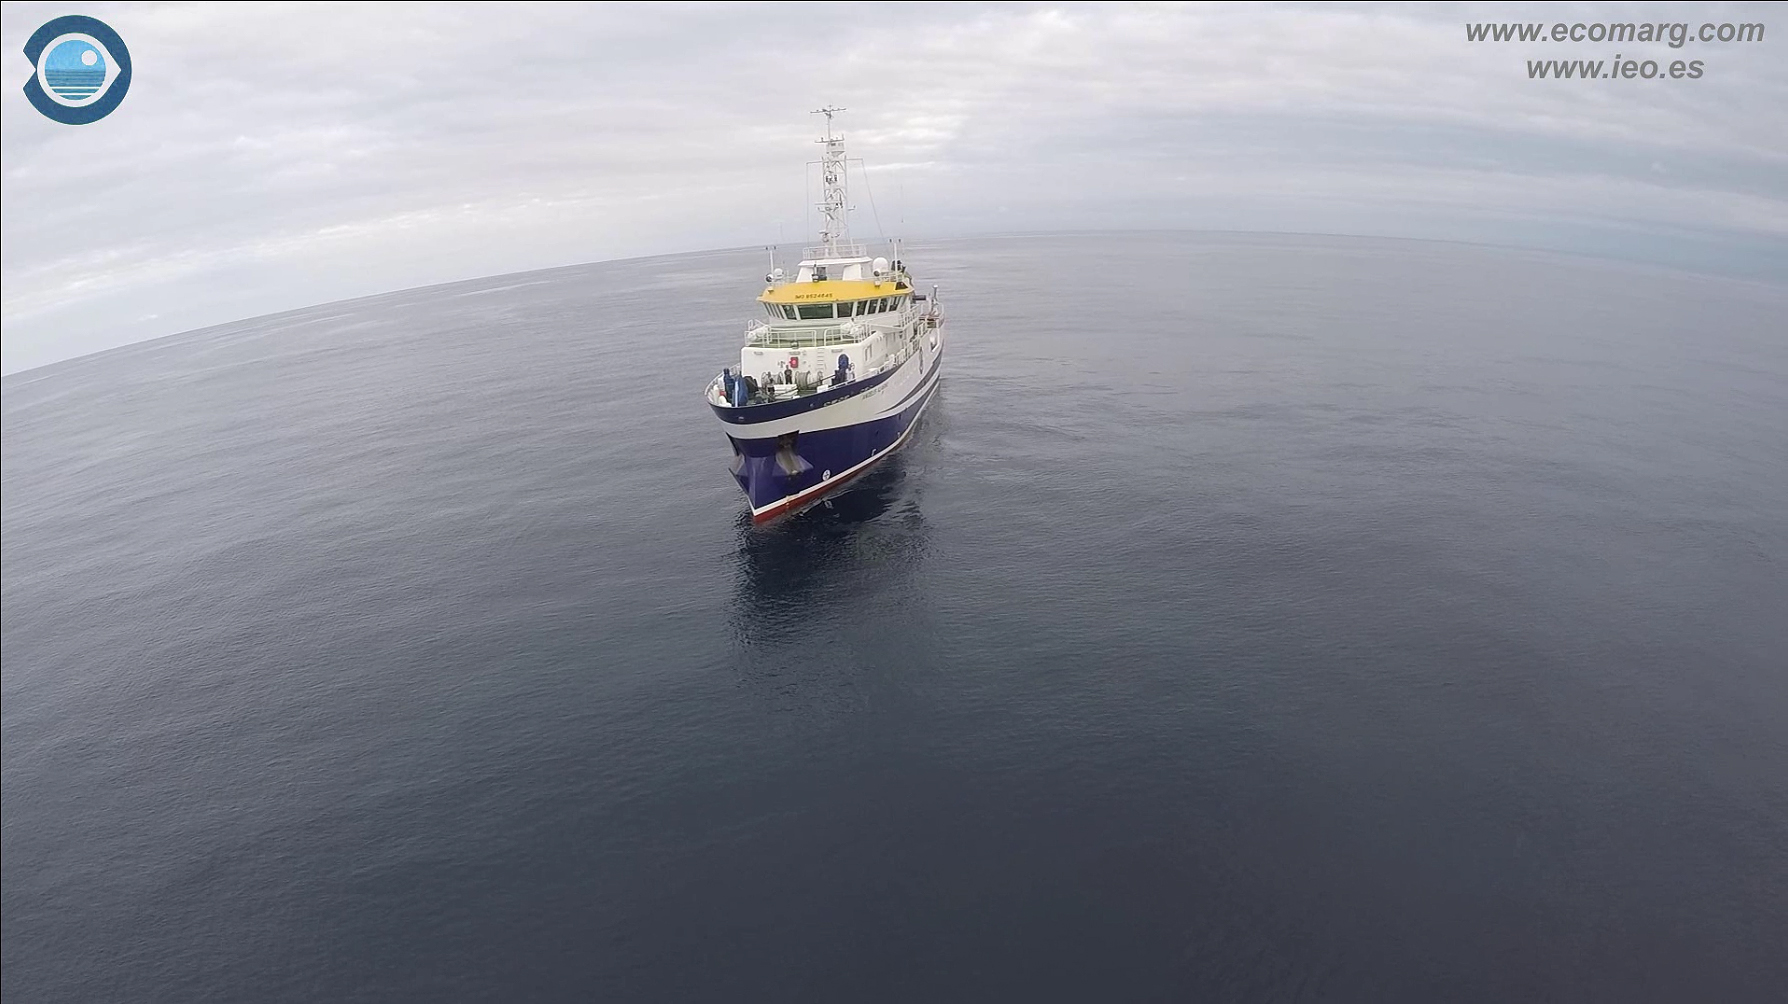 Buque oceanográfico Ángeles Alvariño. Fotograma extraído del vídeo promocional. Imagen: IEO